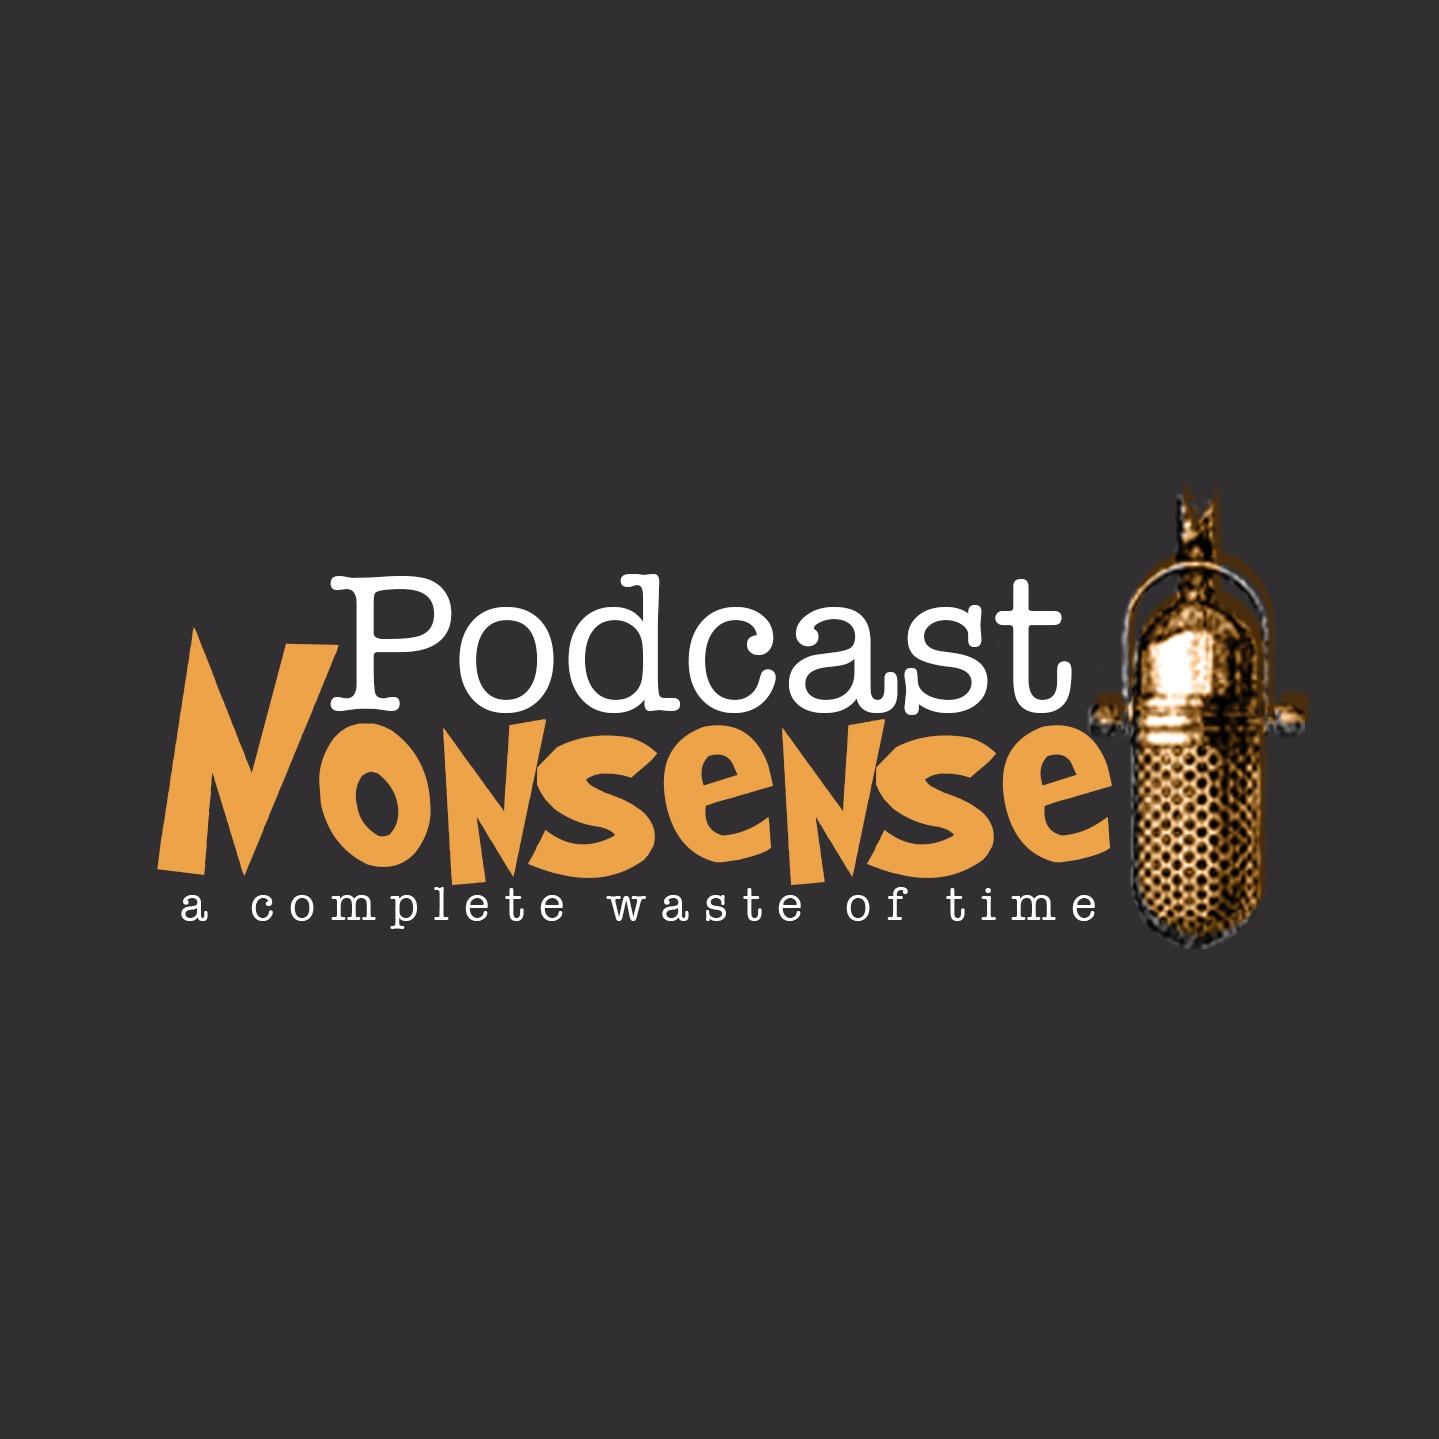 Podcast Nonsense